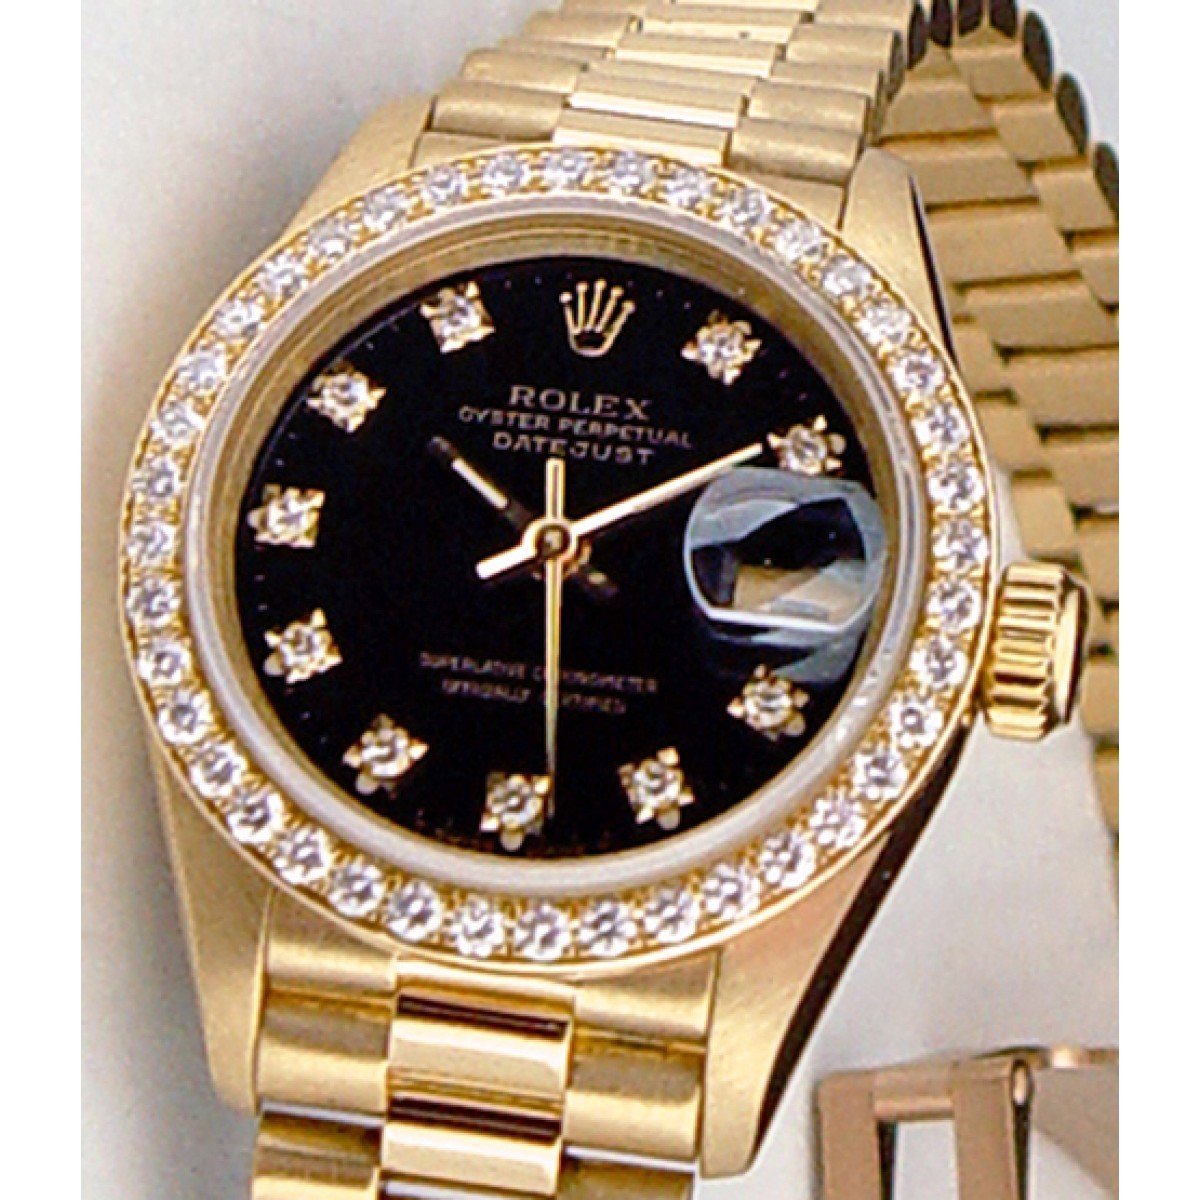 Часы ролекс с бриллиантами. Золотые часы мужские швейцарские ролекс. Часы ролекс золотые с бриллиантами мужские. Rolex Datejust 36 с бриллиантами черный циферблат. Золотые часы ролекс мужские оригинал.